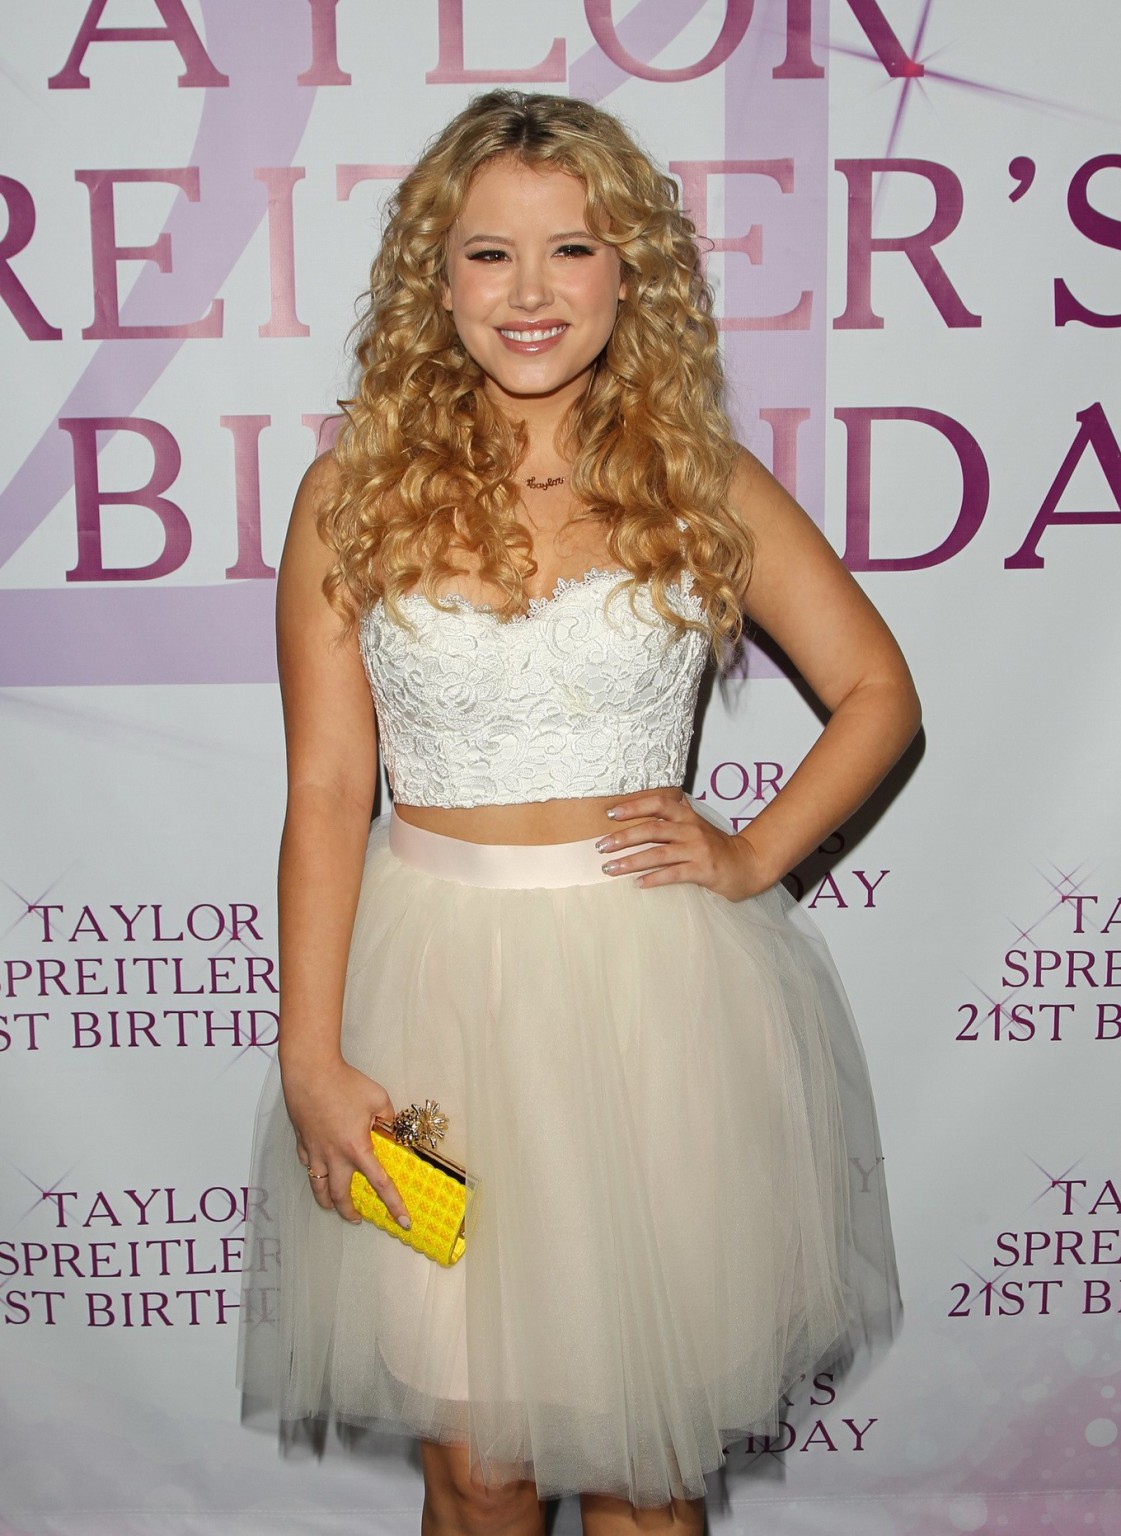 Taylor spreitler vollbusig in weißem bauchfreiem Top und kurzem Rock bei ihrem 21. geburtstag p
 #75183108